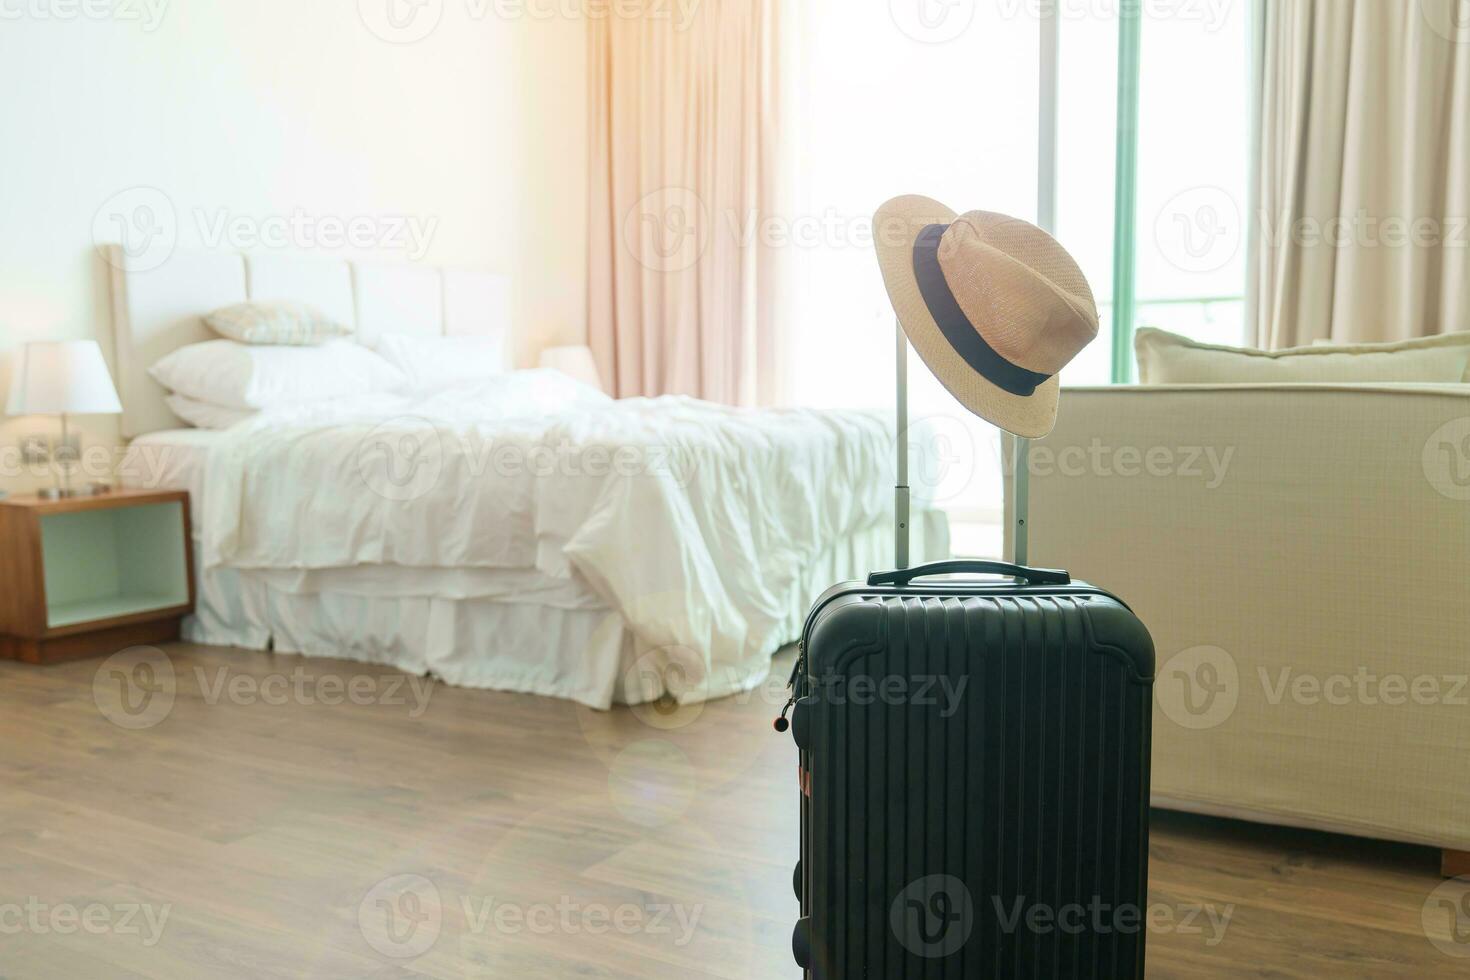 svart bagage med hatt i modern hotell rum efter dörr öppning. bagage för tid till resa, service, resa, resa, sommar Semester och semester begrepp foto